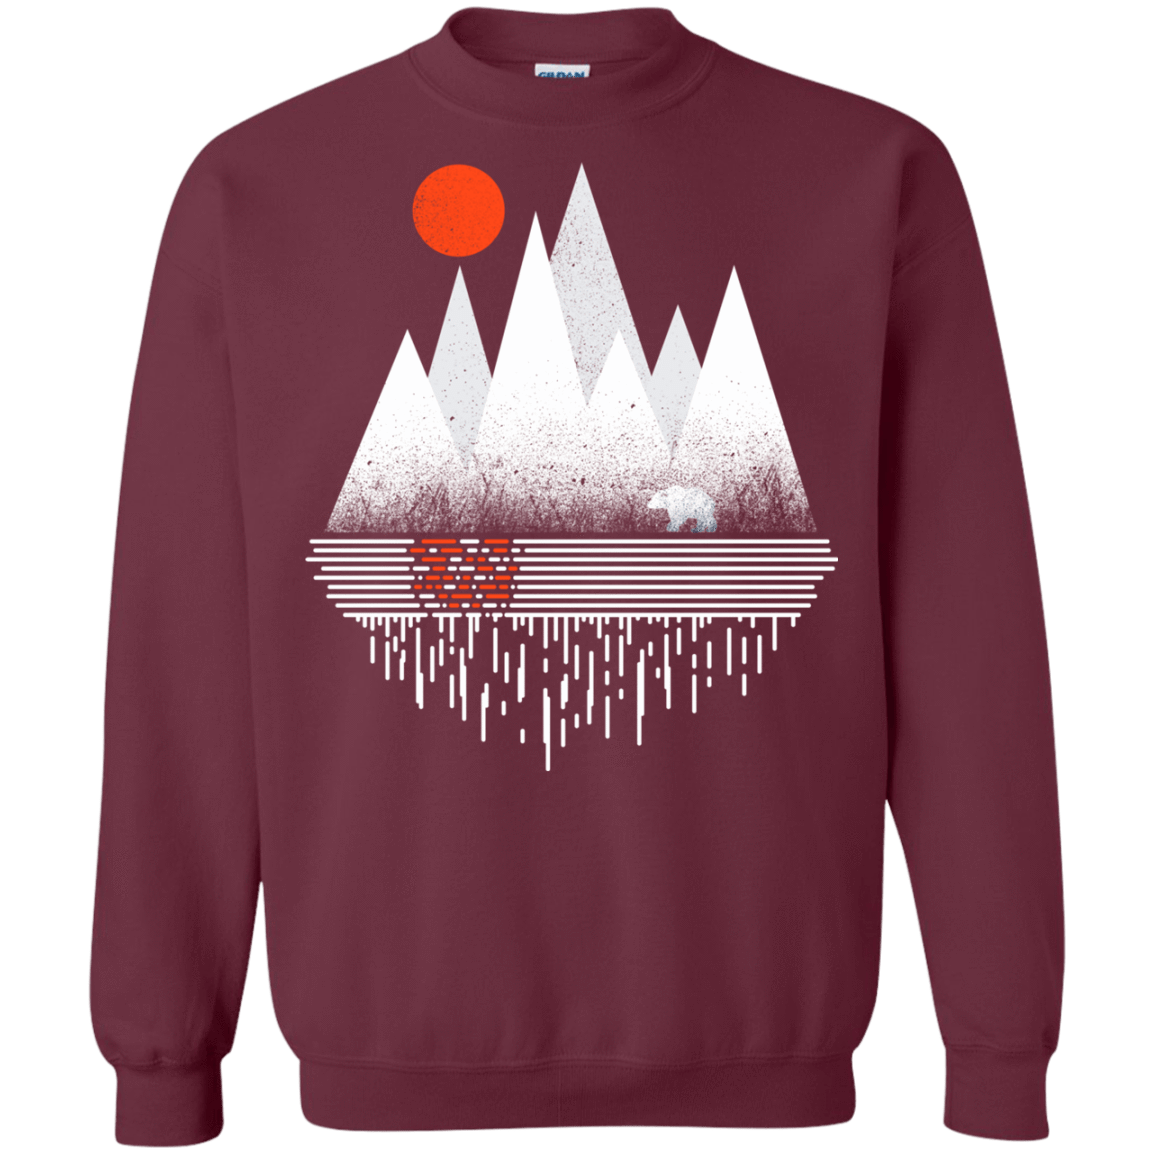 Sweatshirts Maroon / S Wild Bear Crewneck Sweatshirt